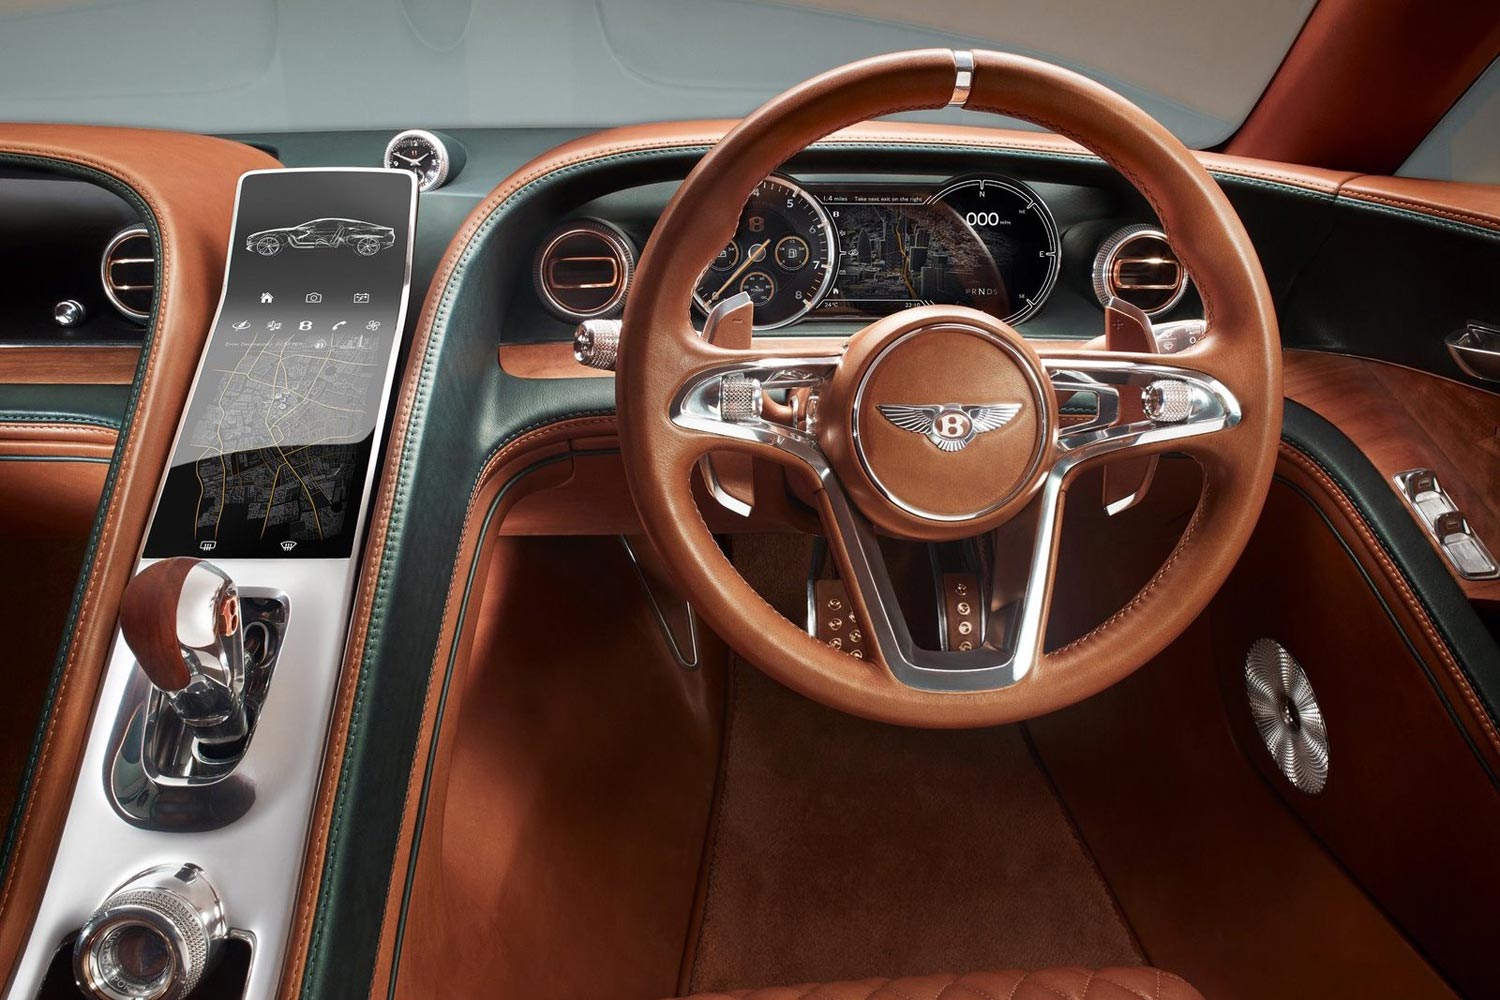 2015 Bentley Exp 10 Speed 6